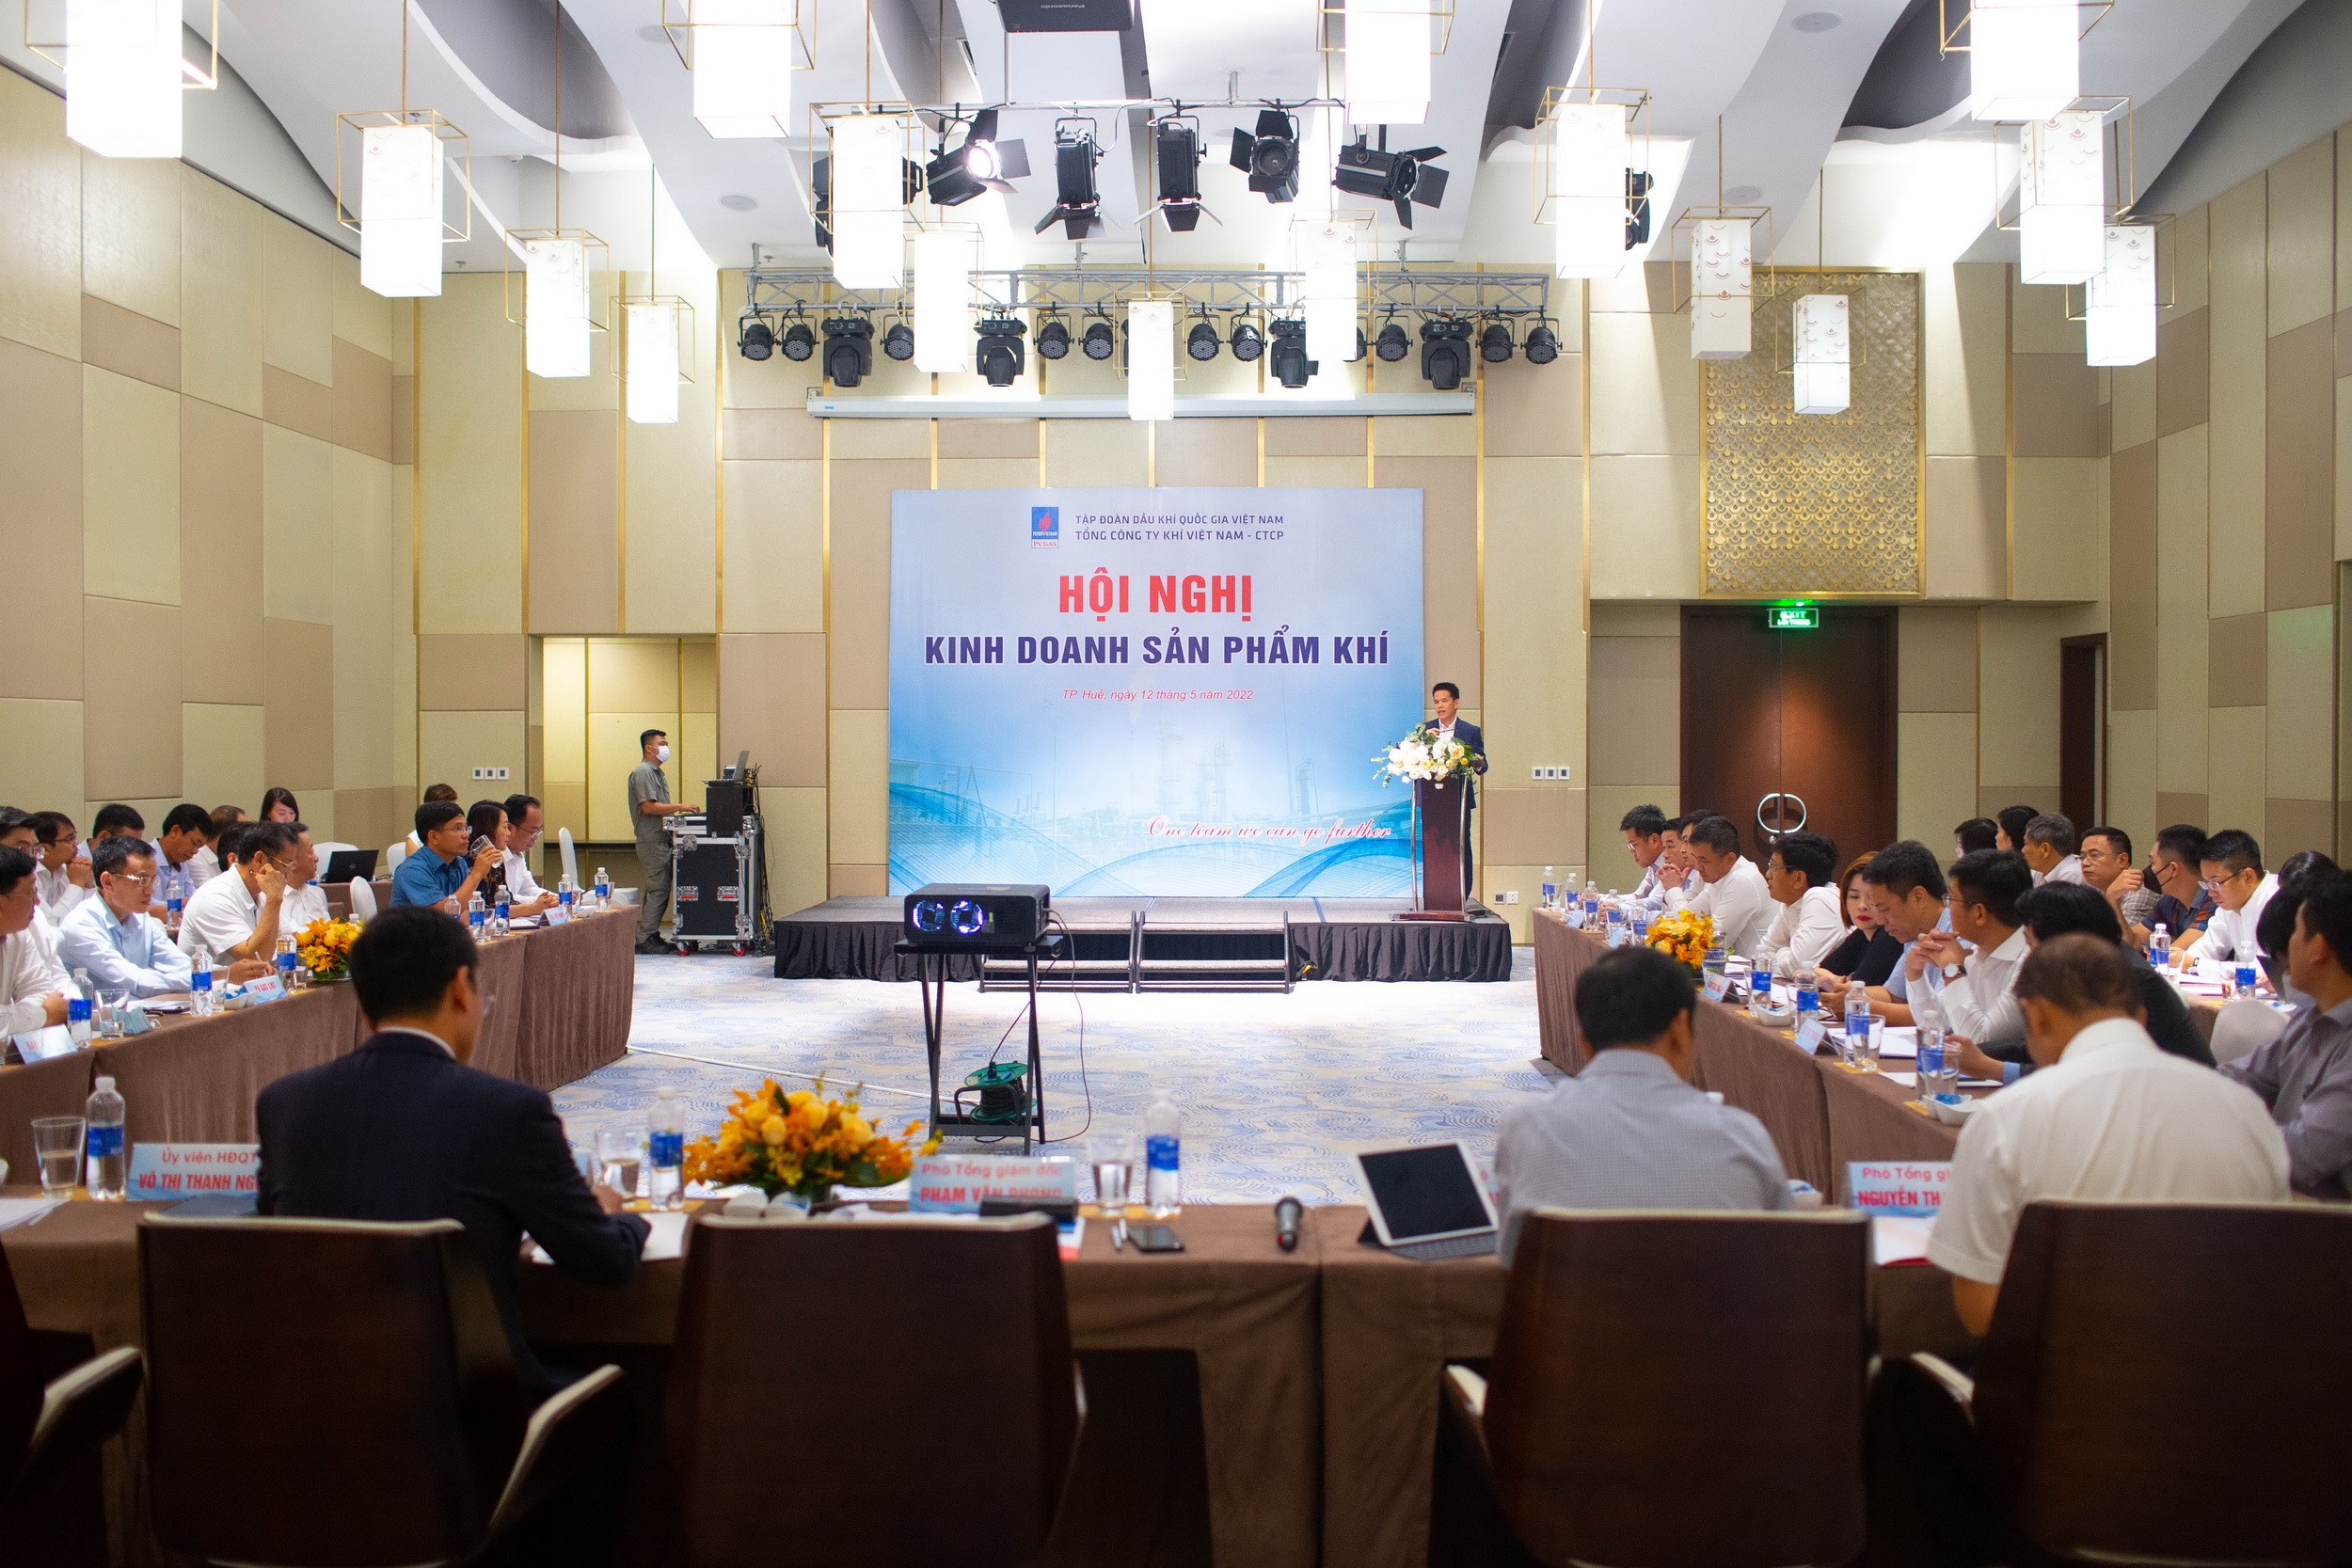 Hội nghị kinh doanh sản phẩm khí PV GAS năm 2022